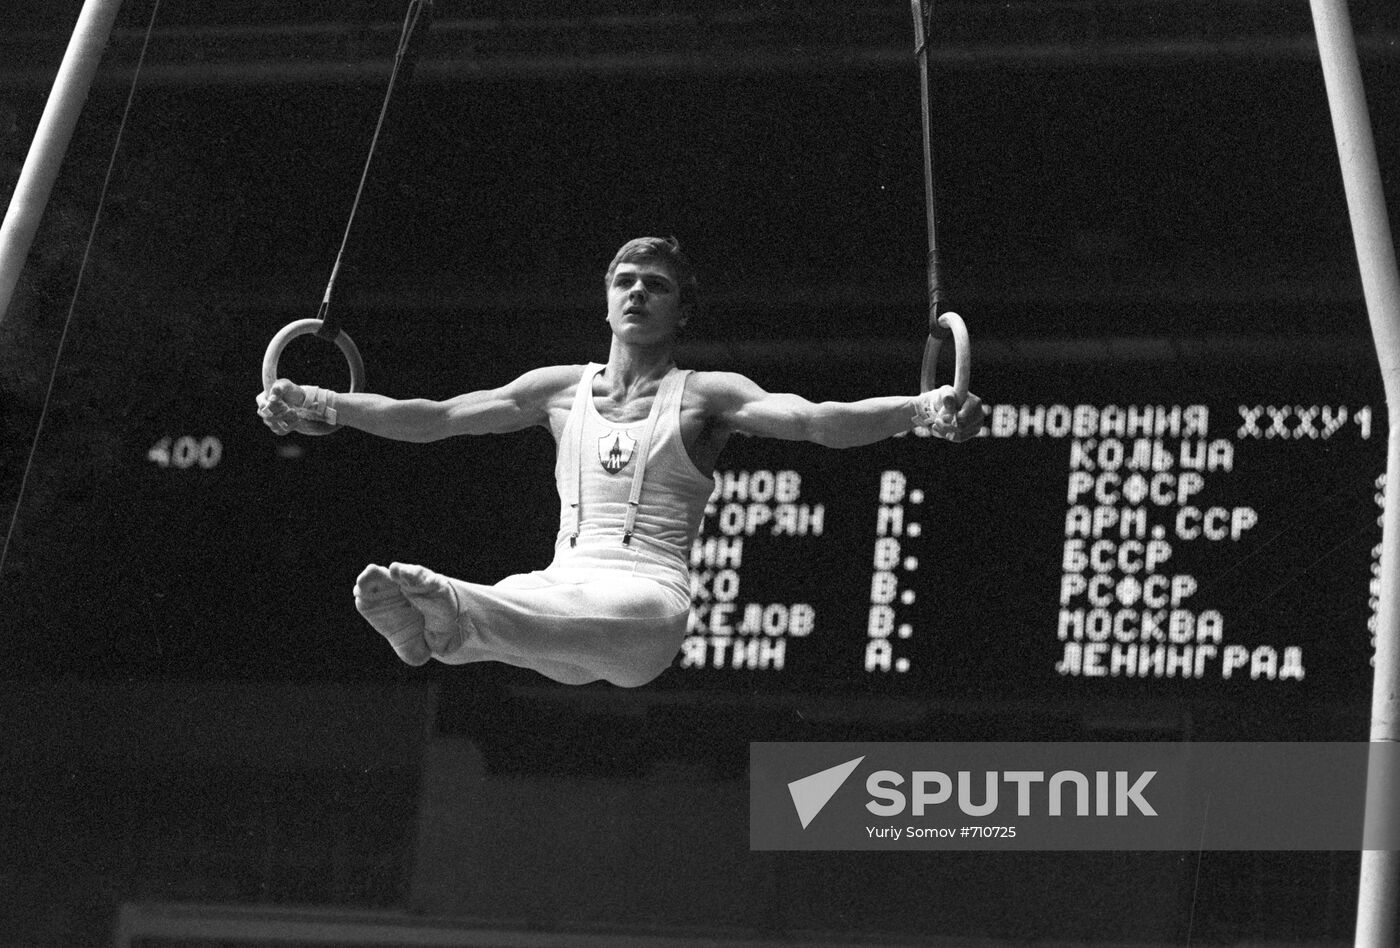 Vladimir Markelov, winner of USSR Multiathlon Cup